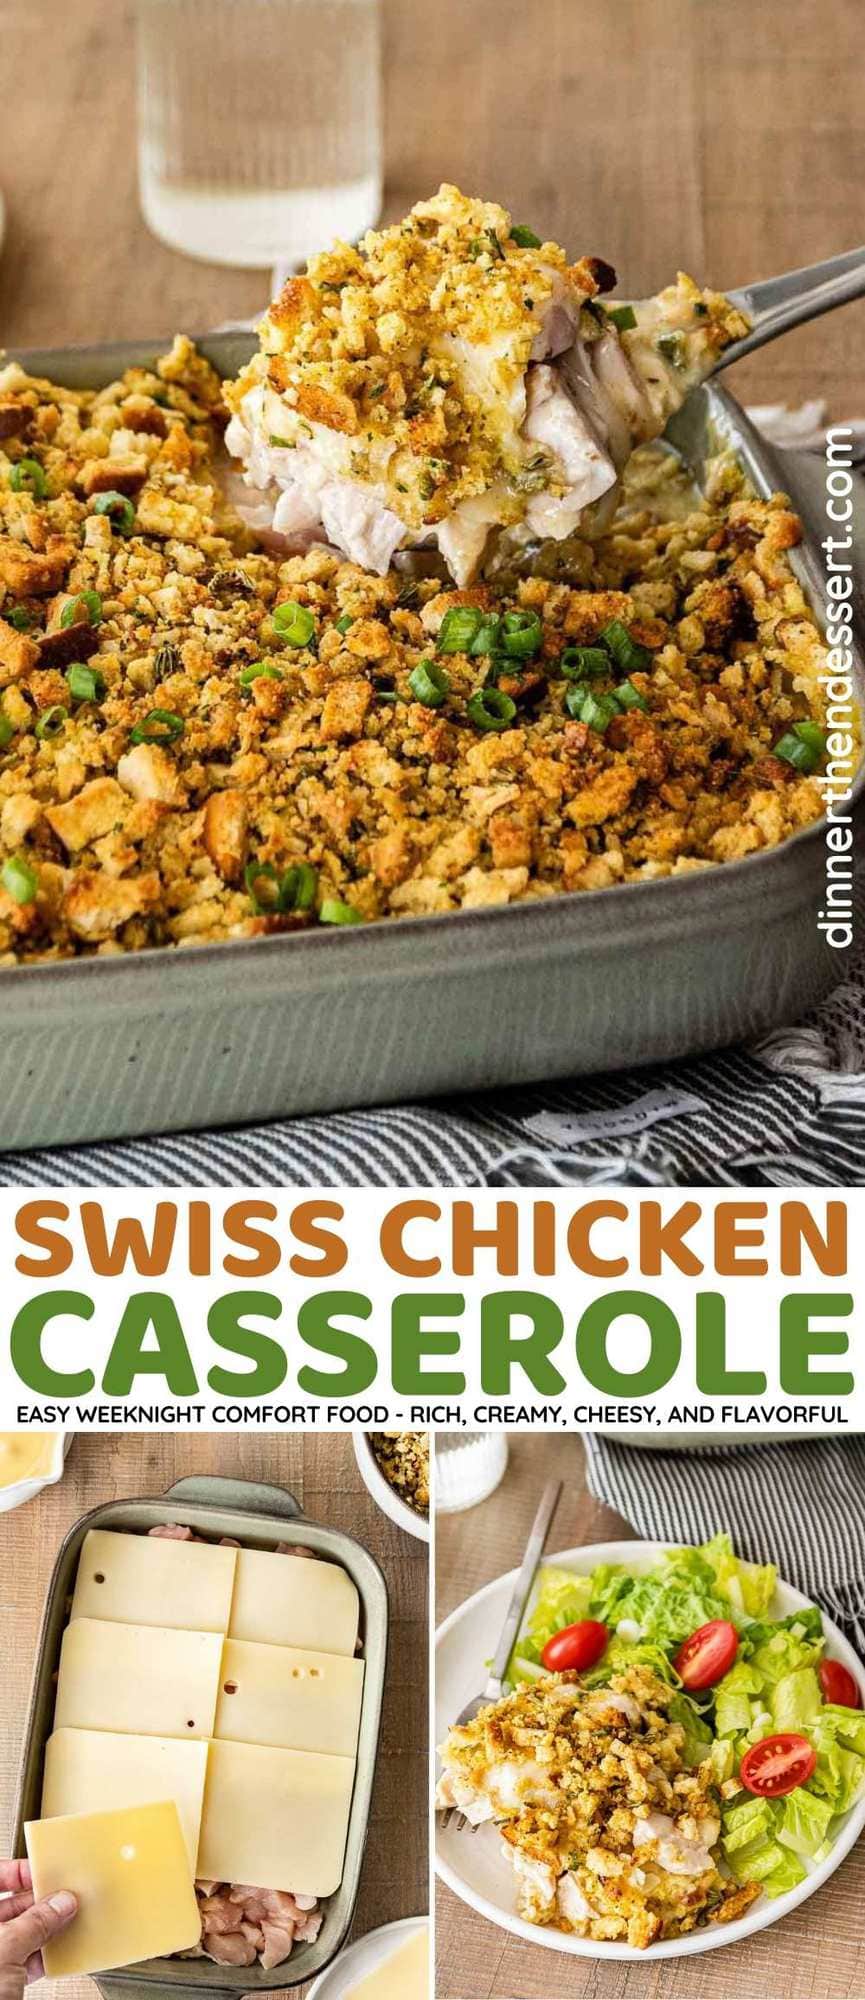 Swiss Chicken Casserole collage